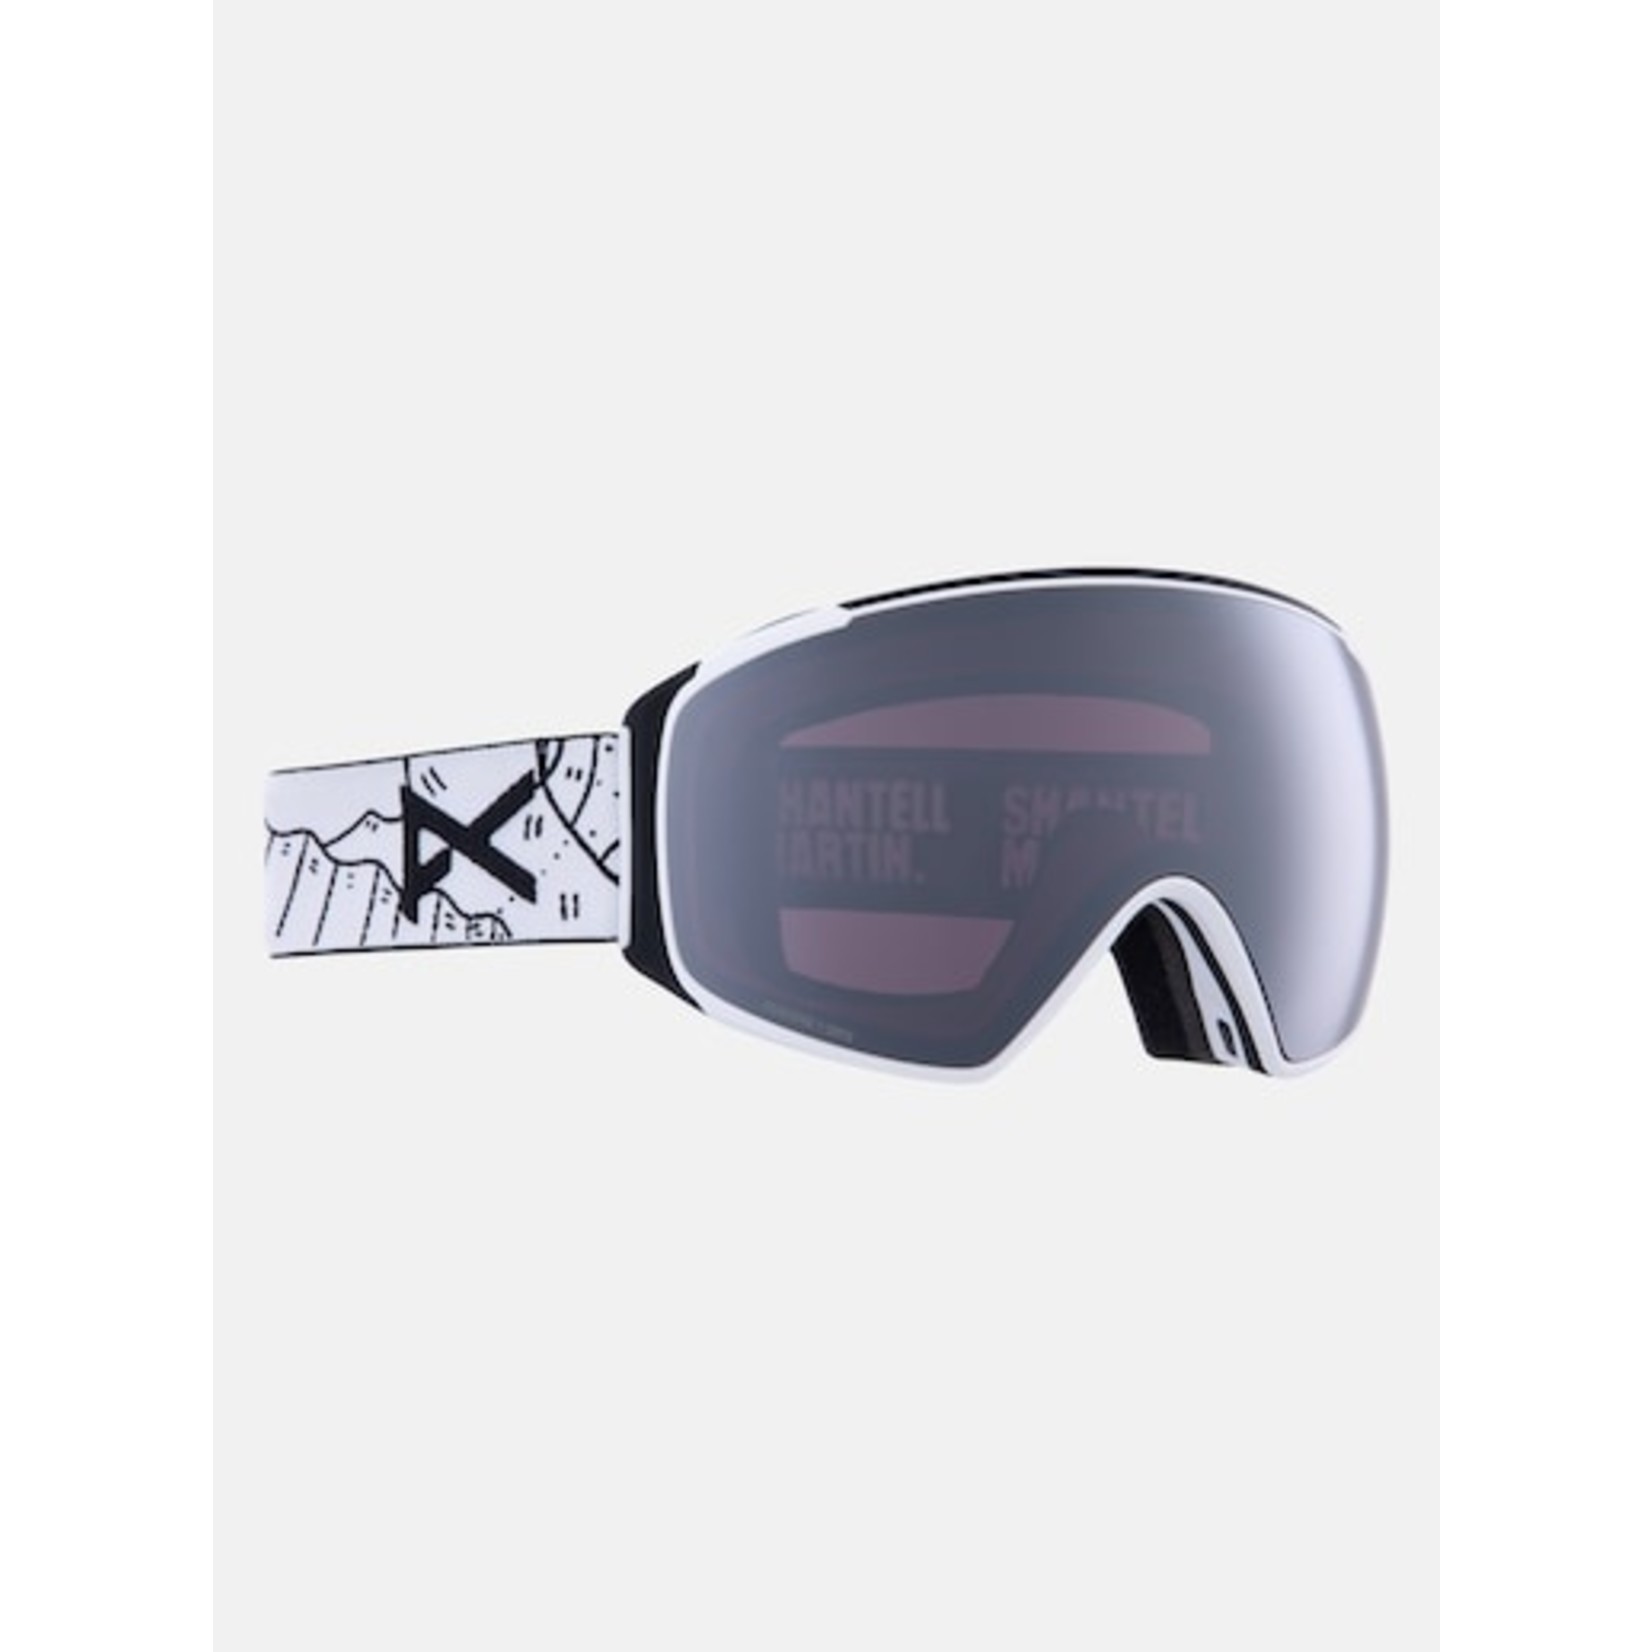 ANON M4S Toric Goggles + Bonus Lens + MFI face mask